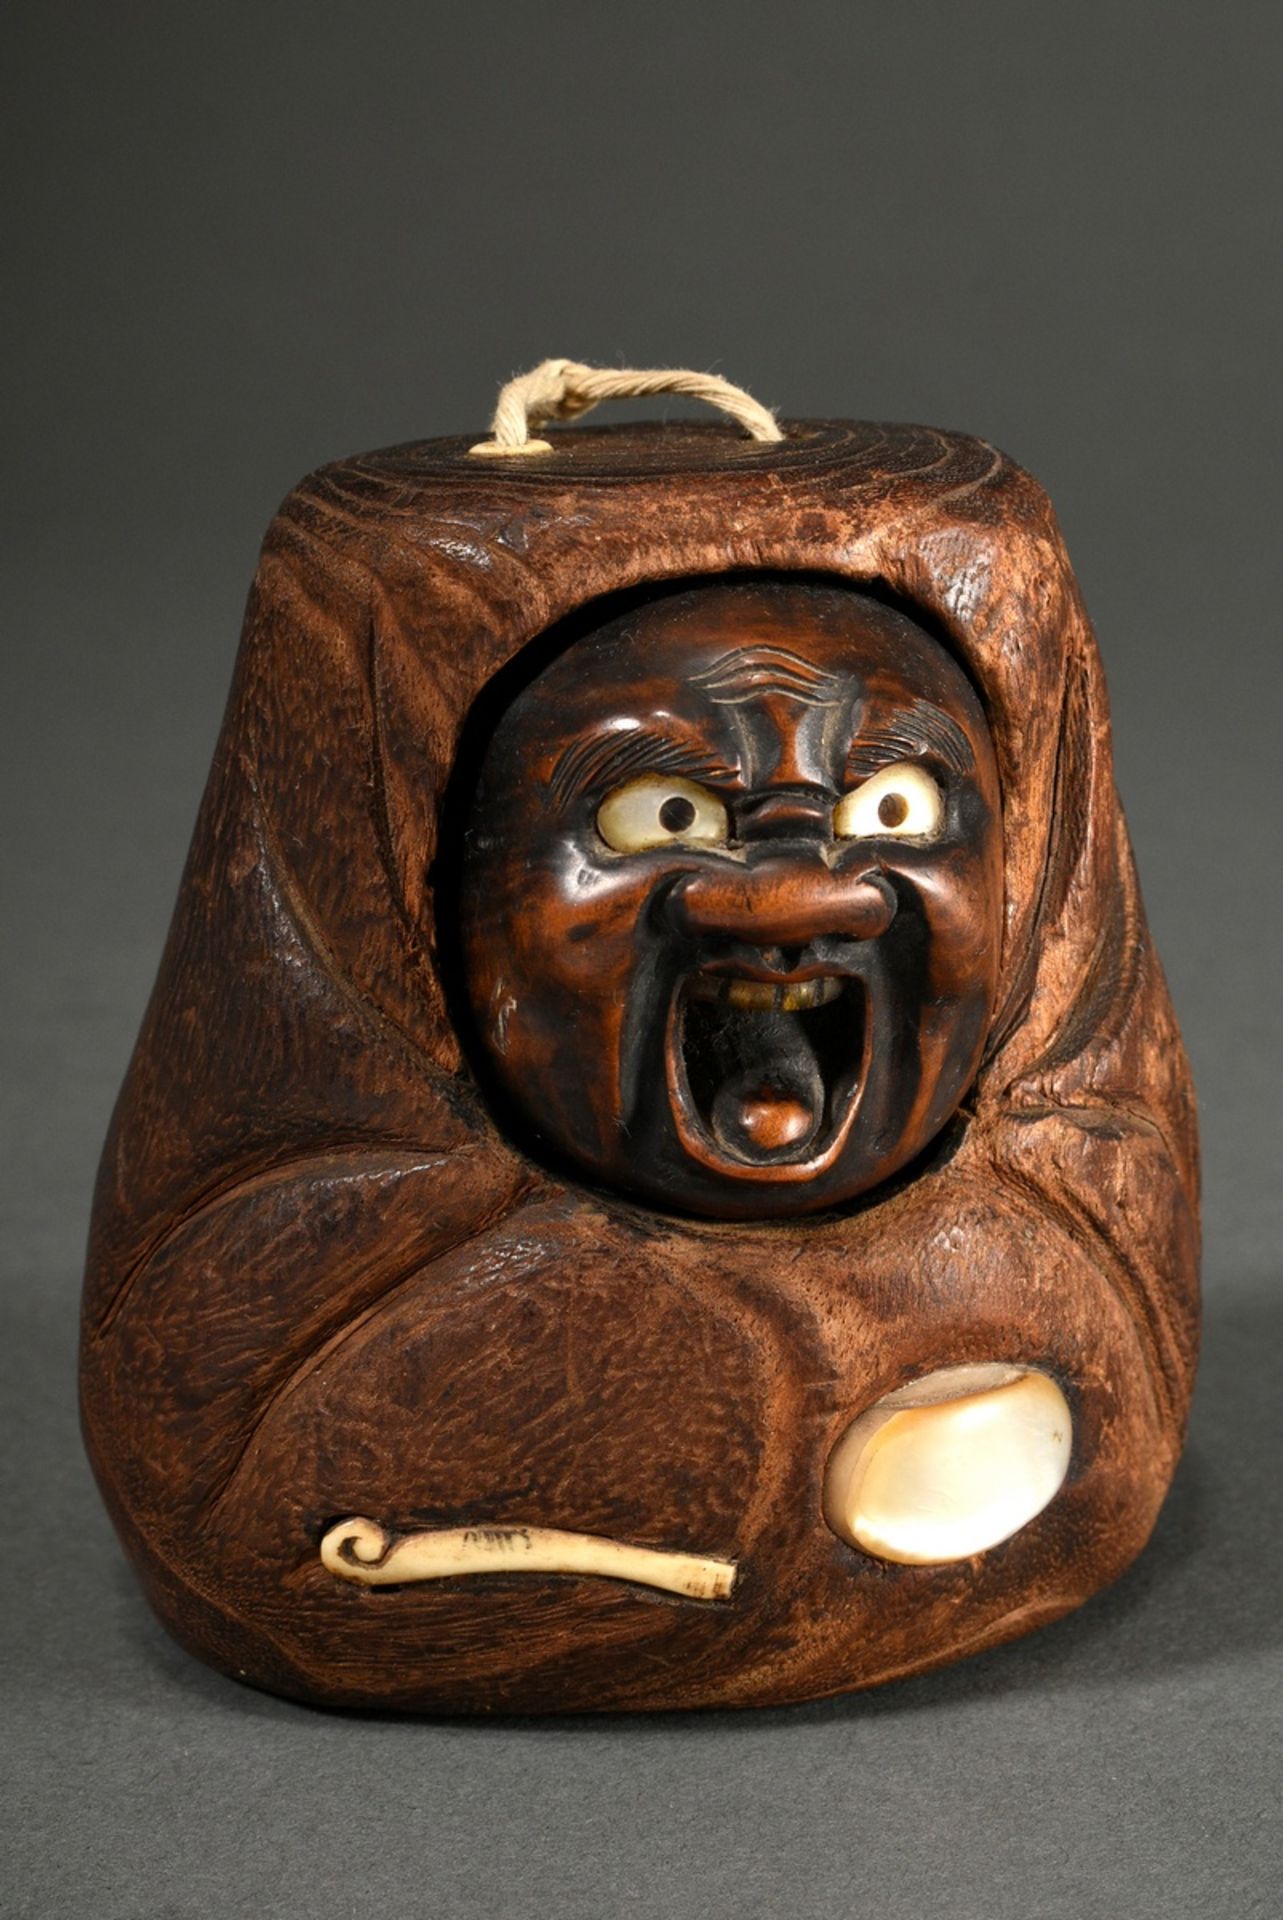 Hinoki Holz Tonkotsu Tabakbehälter mit Buchsbaum Maskendeckel „Daruma“ sowie Perlmutt- und Hirschho